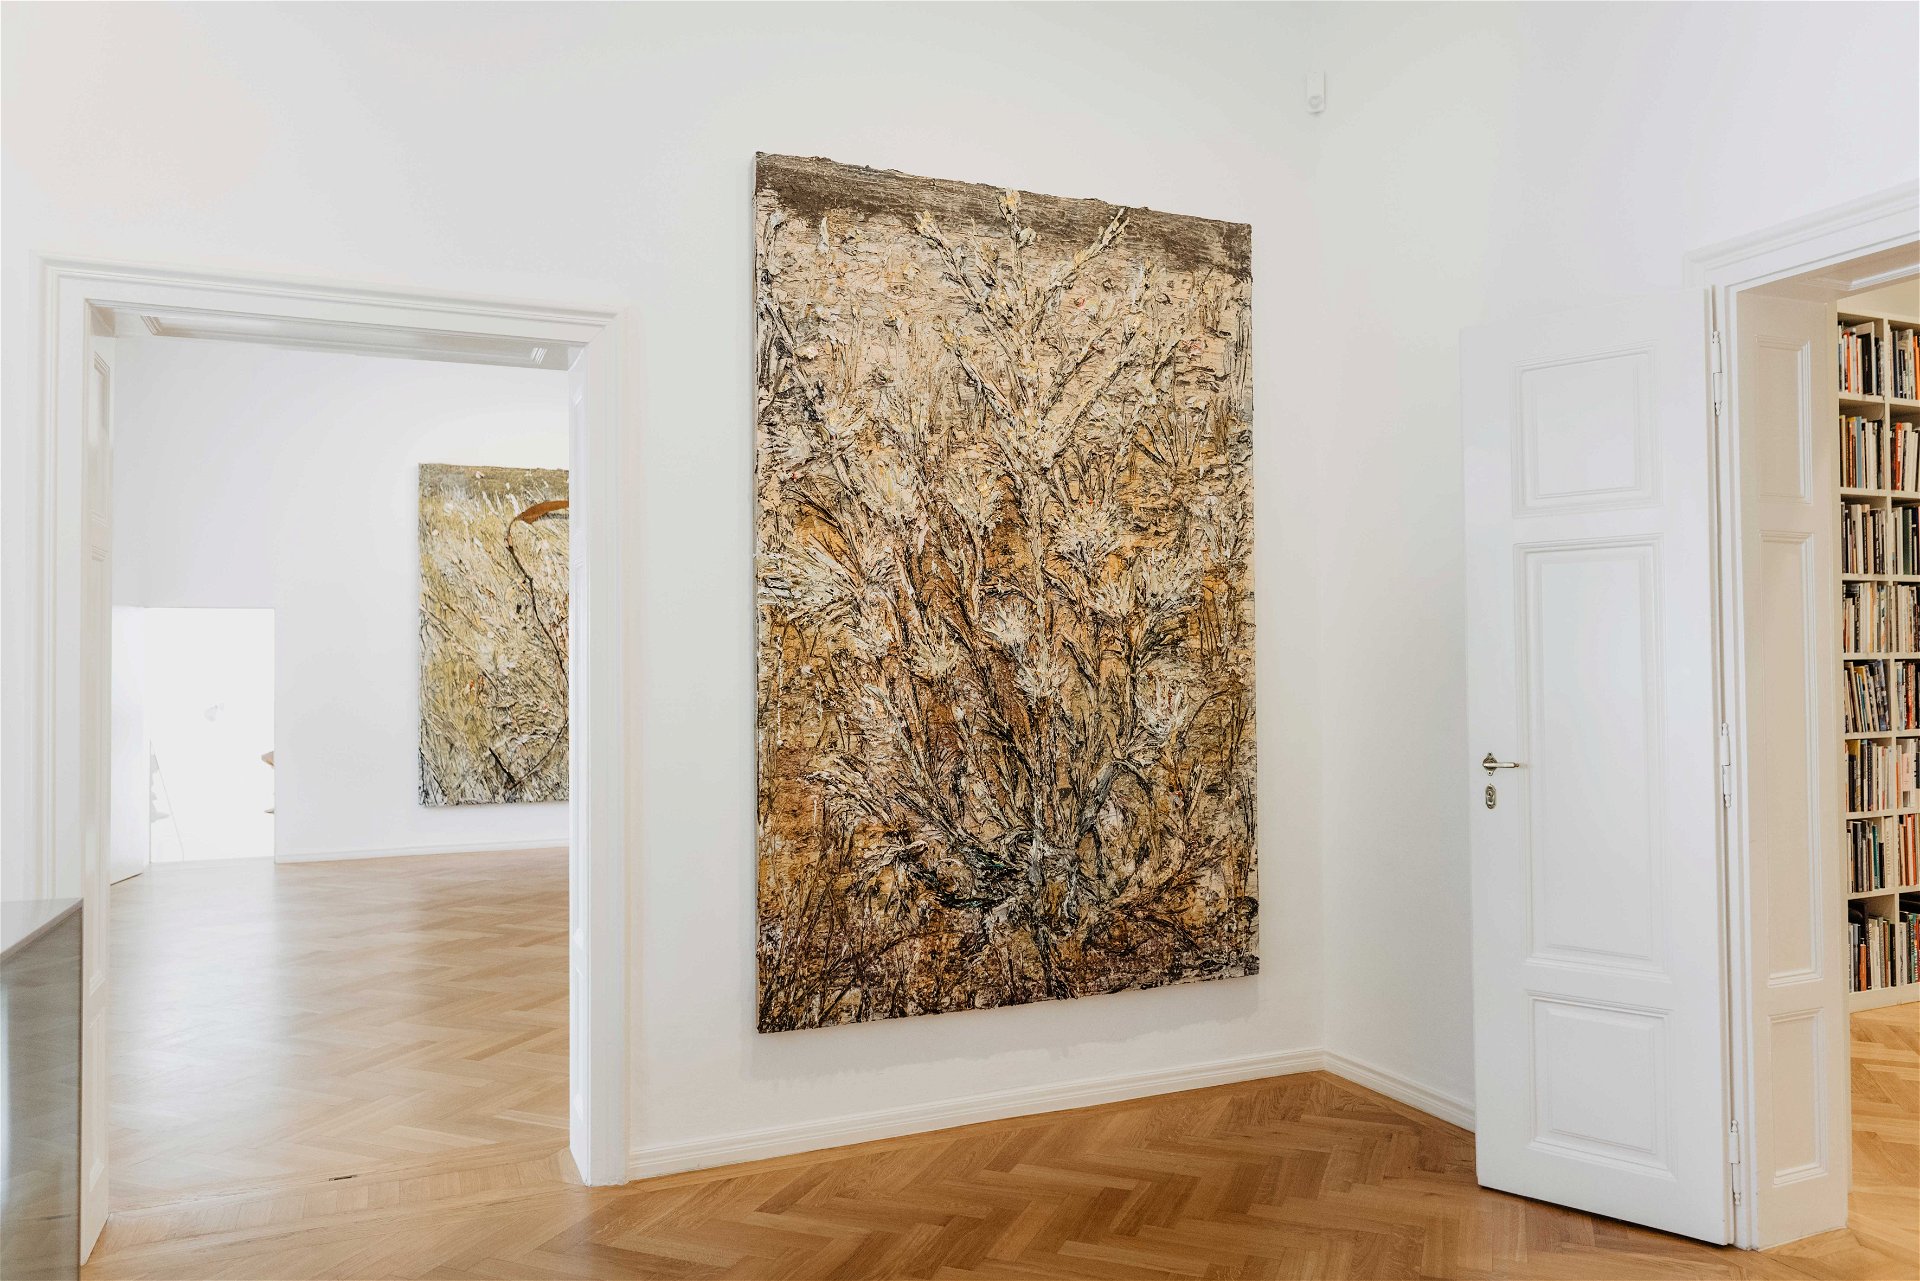 Ausstellungseinblick: Anselm Kiefers monumentale Gemälde, inspiriert durch die Poesie Walthers von der Vogelweide, sind bis 3. Oktober in Salzburg zu sehen.